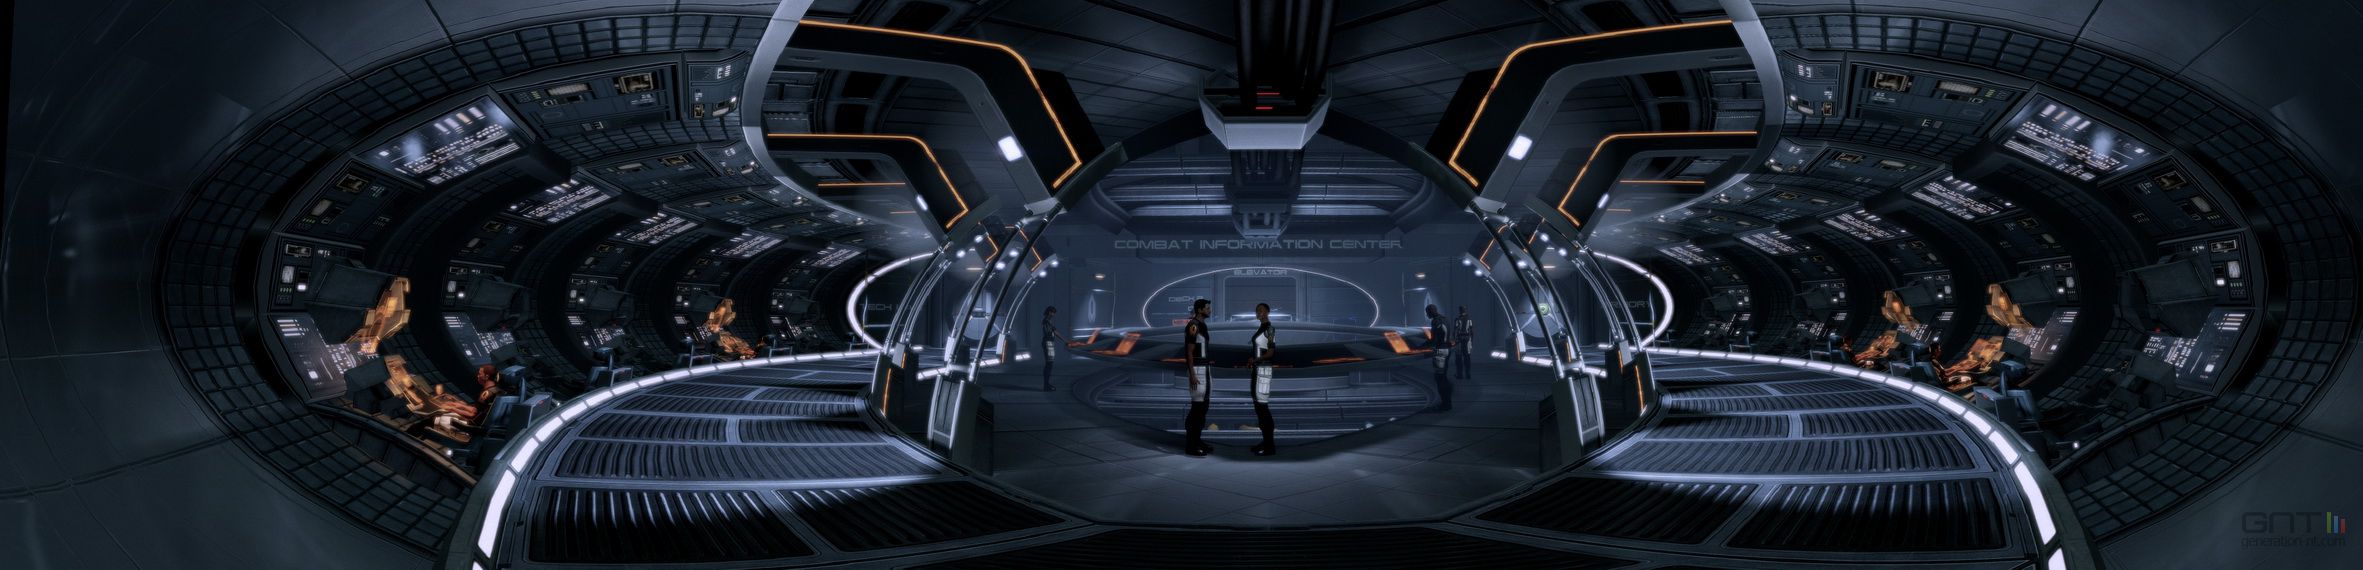 Mass Effect 2 - Image 112